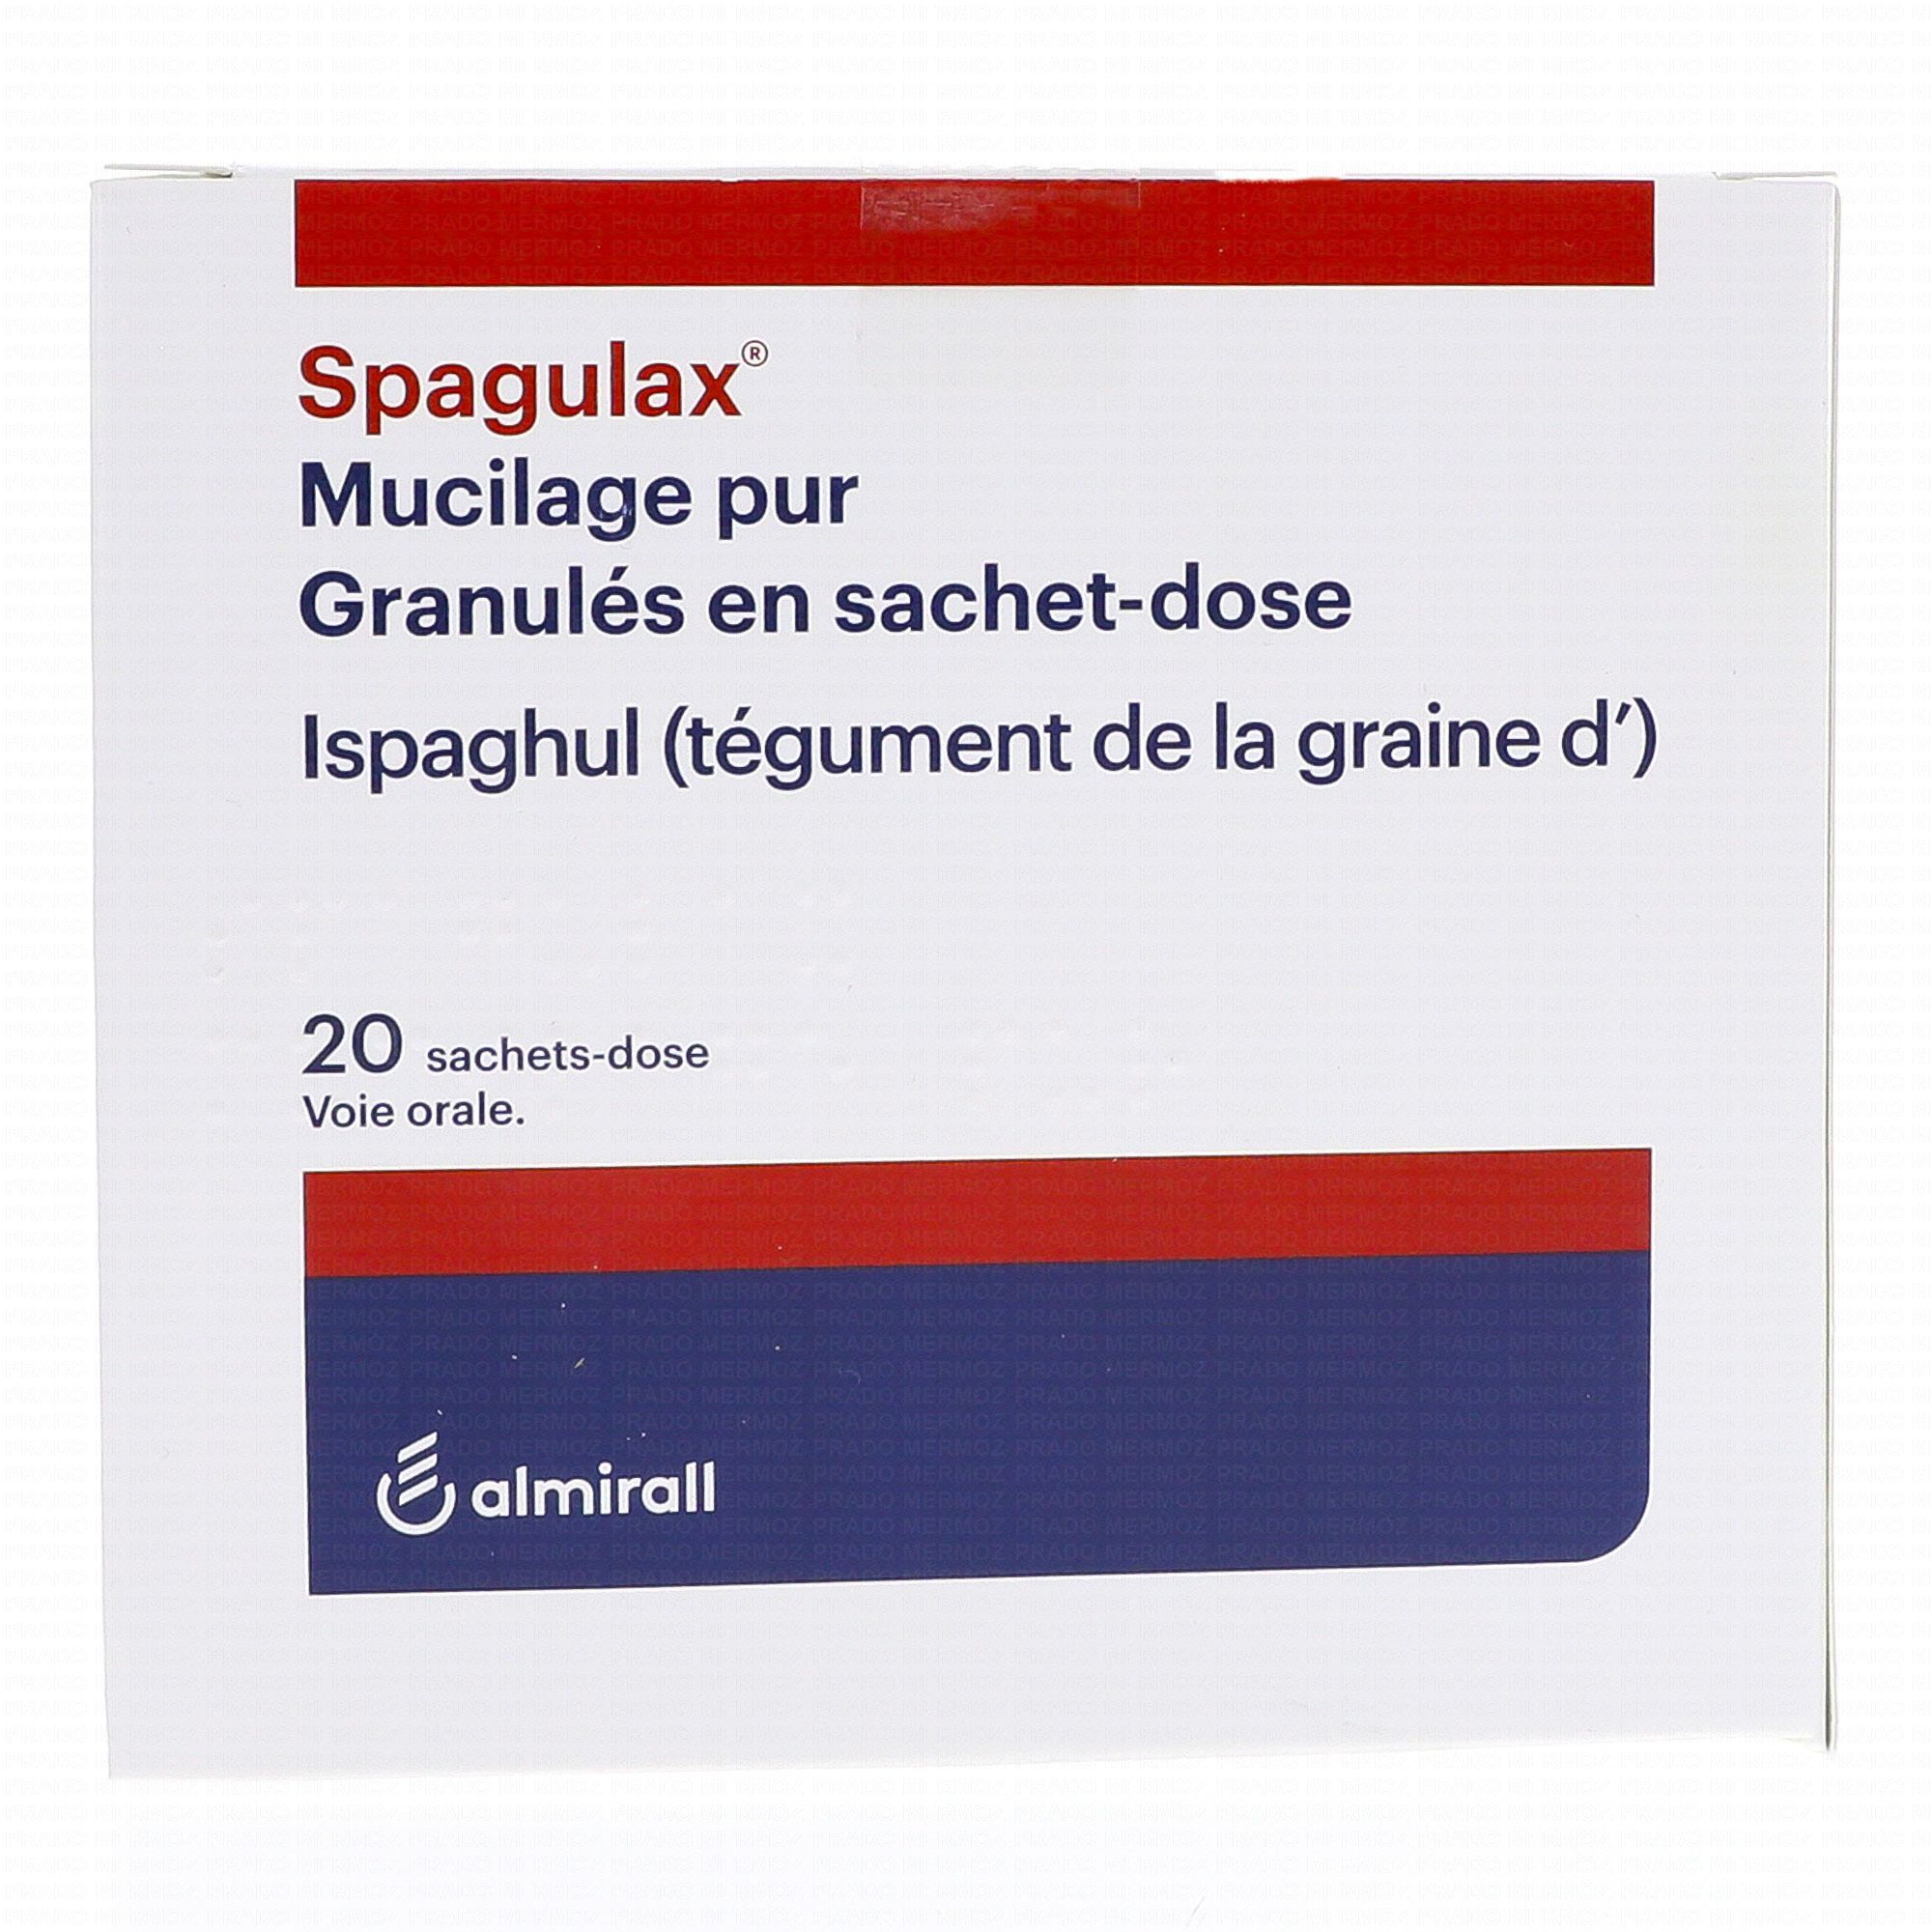 Spagulax mucilage pur boîte de 20 sachets-doses - Médicament ...